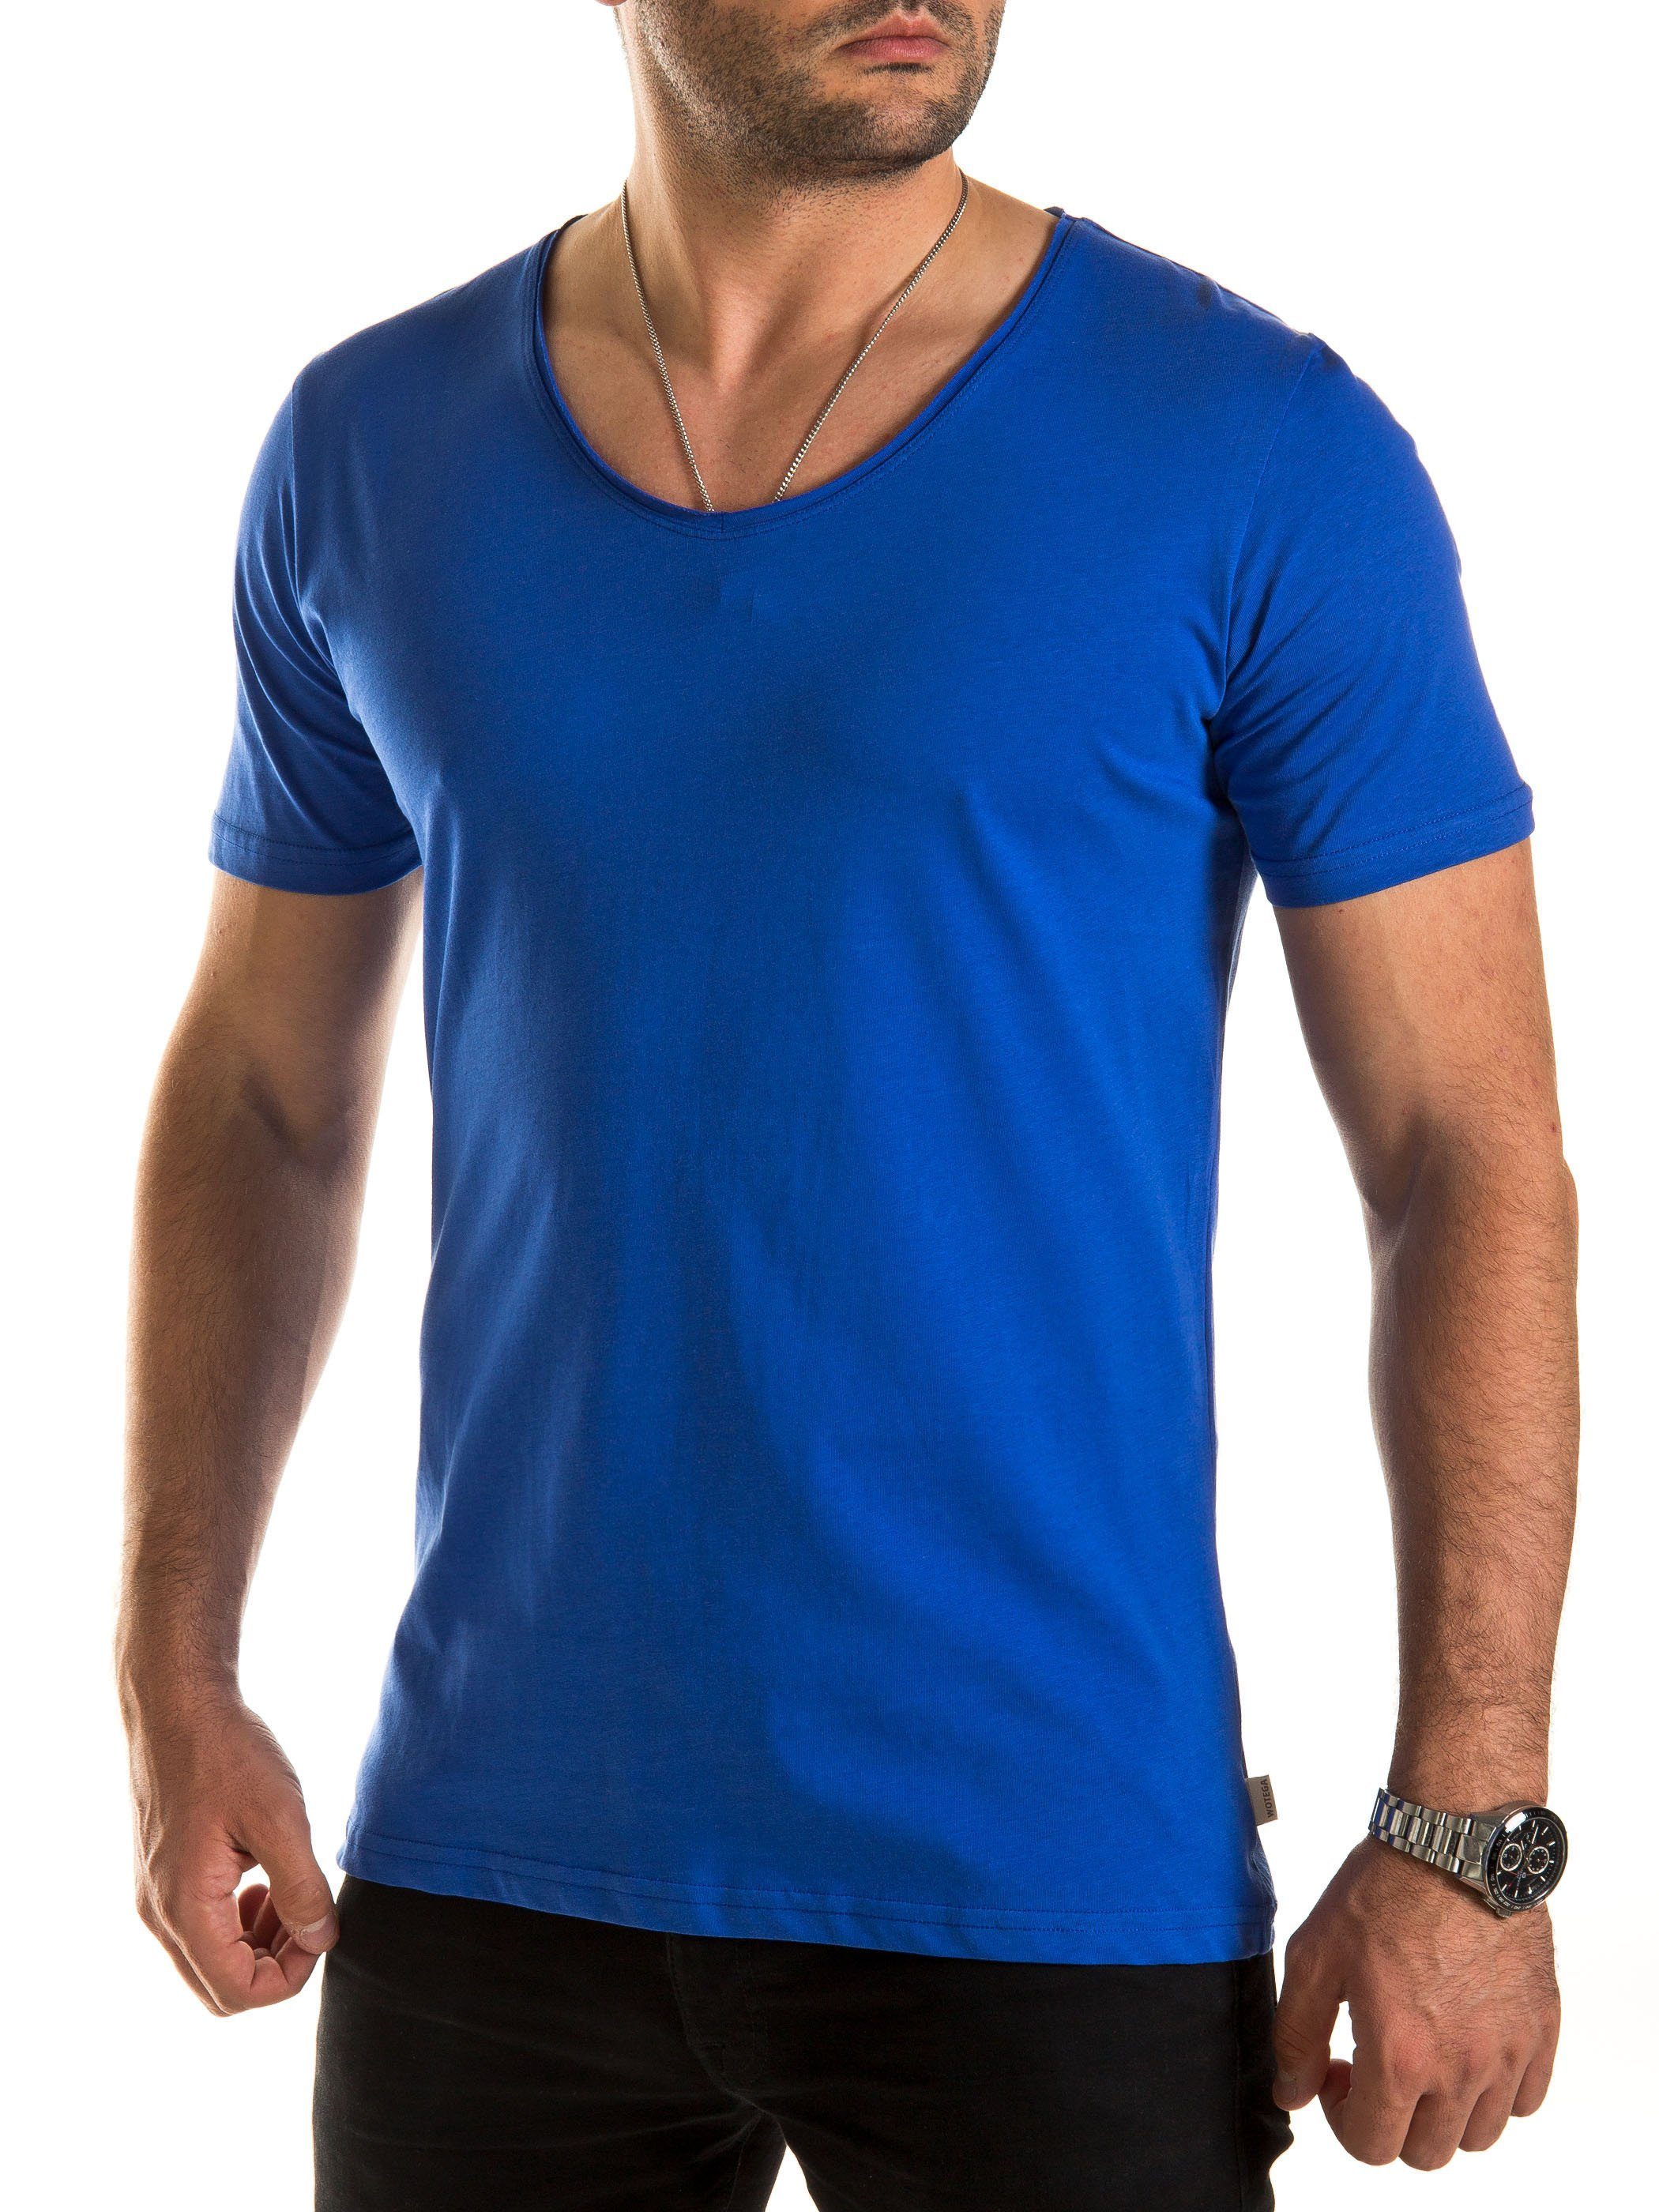 WOTEGA V-Shirt Nasus Basic Tee V-Neck Blau (deep ultramarine 193950)